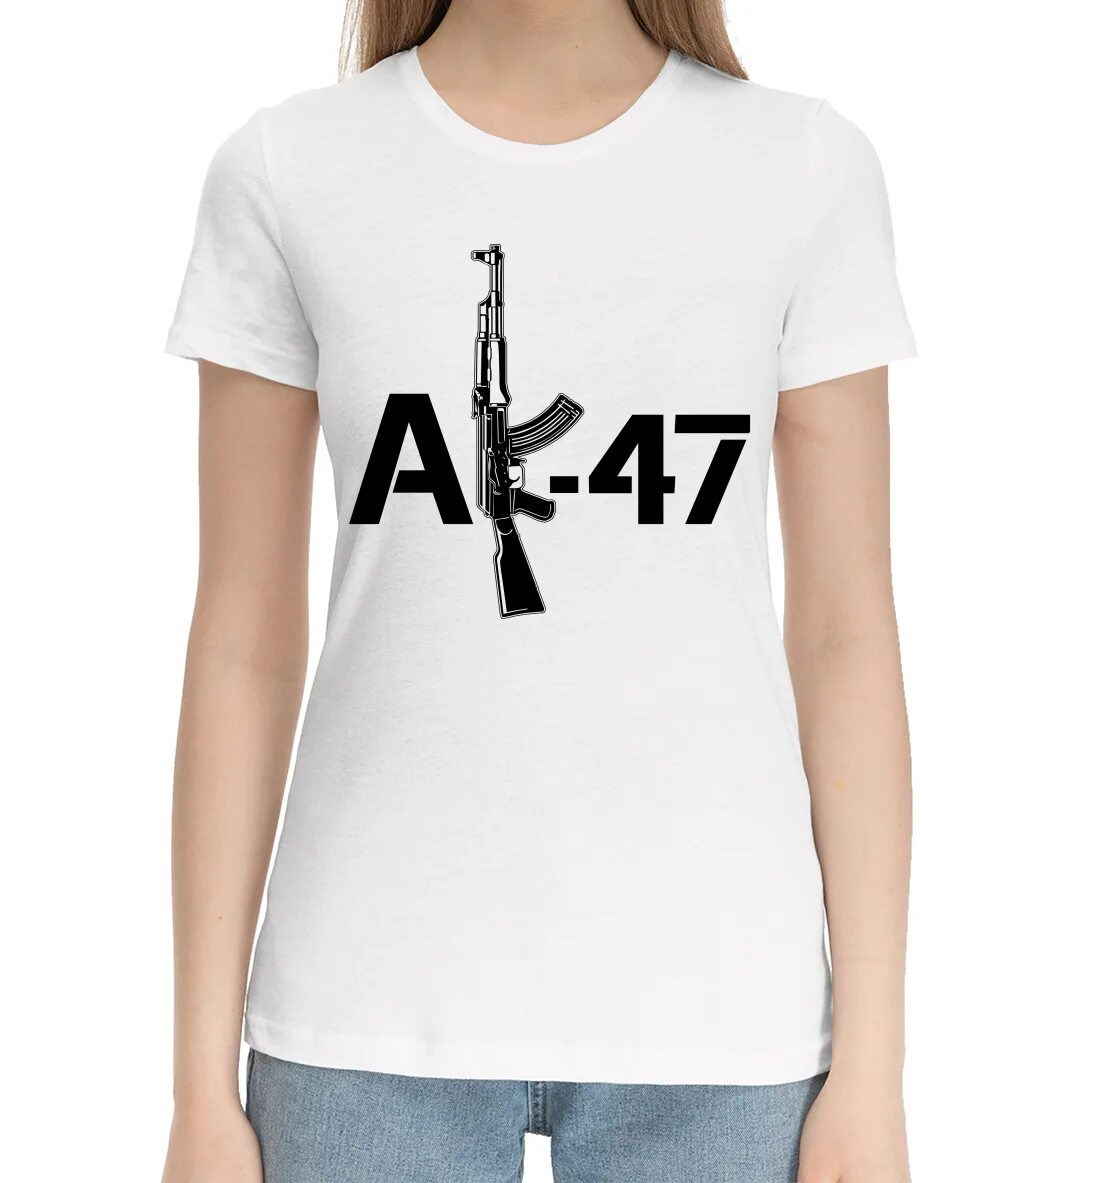 Ак футболка жынды очки. Футболка АК 47. Ak47 футболка. Футболка с автоматом Калашникова. Футболка женская АК-47.